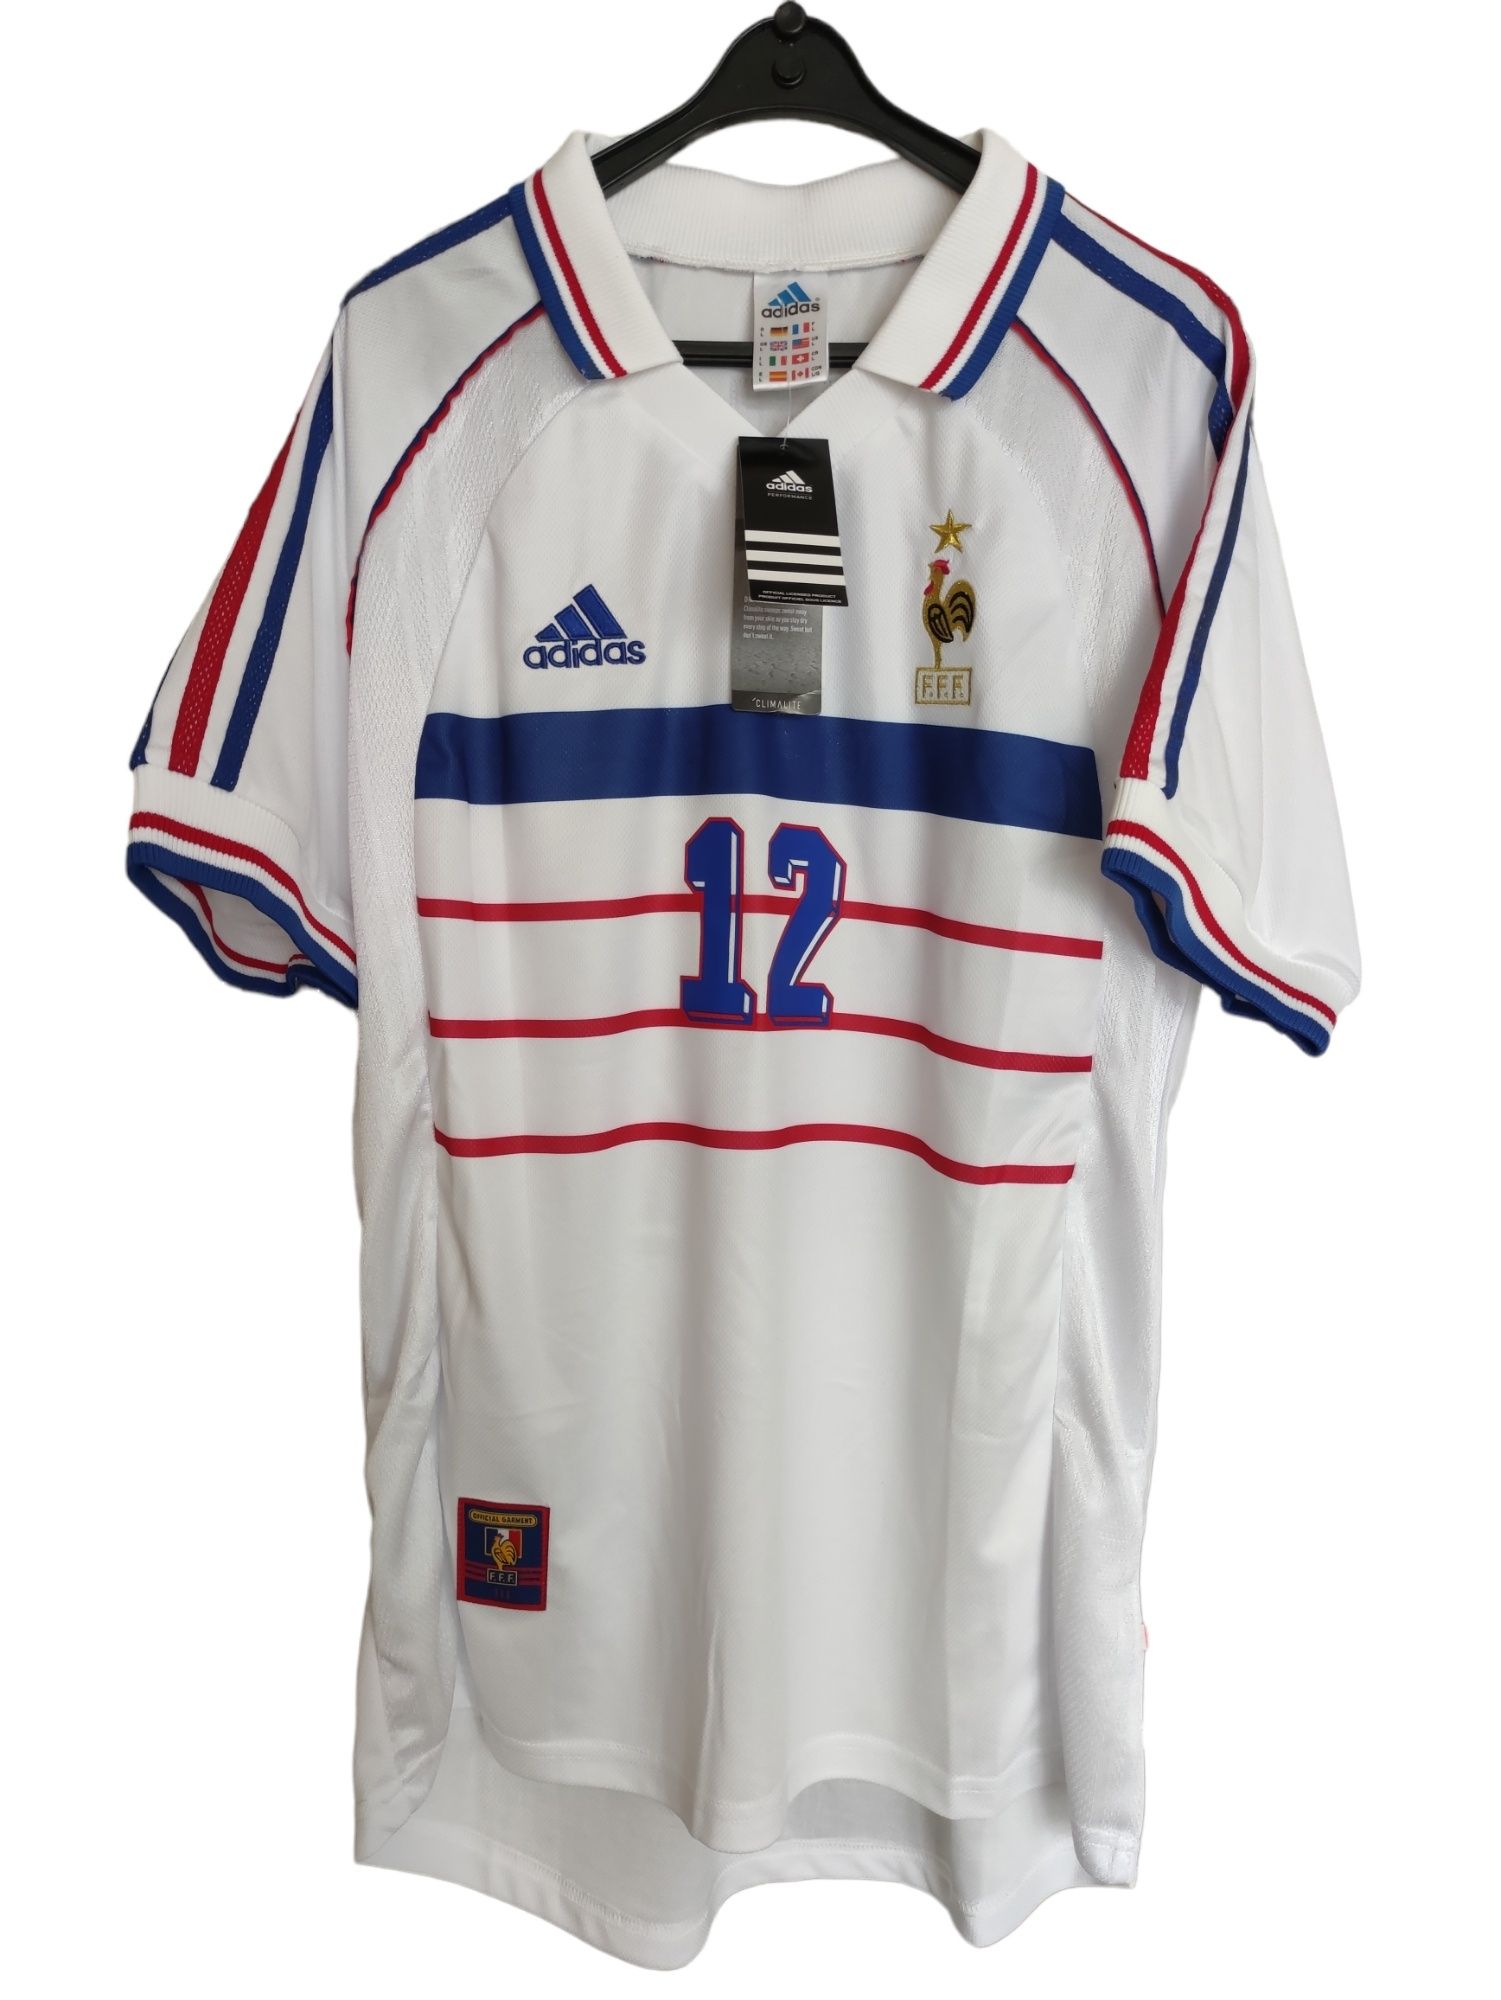 Reprezentacja Francji Retro 1998 Thierry Henry #12 Adidas r.L legenda